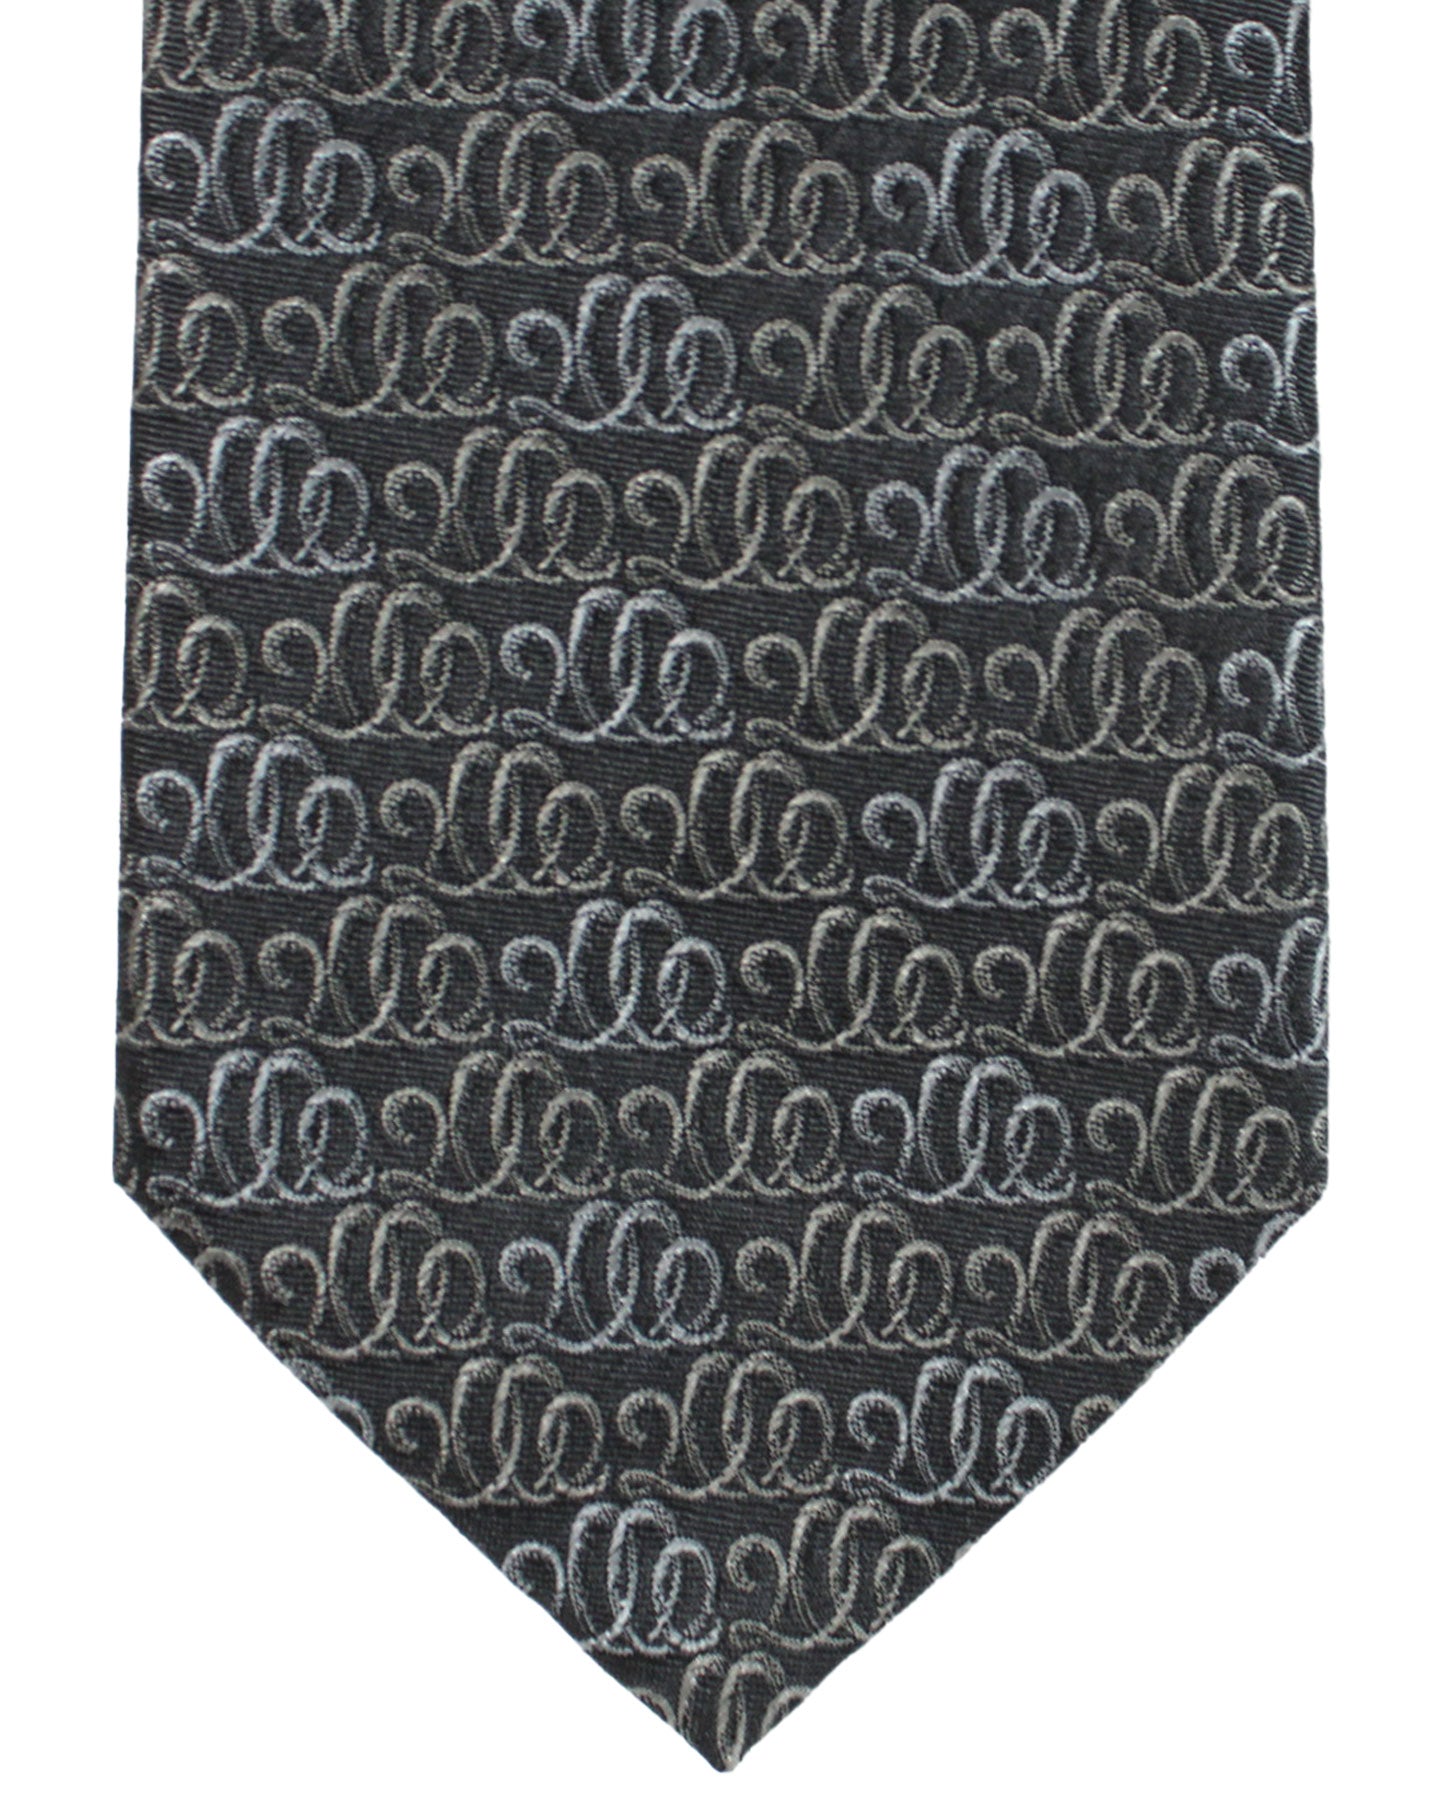 Salvatore Ferragamo Tie Black Swirl Design